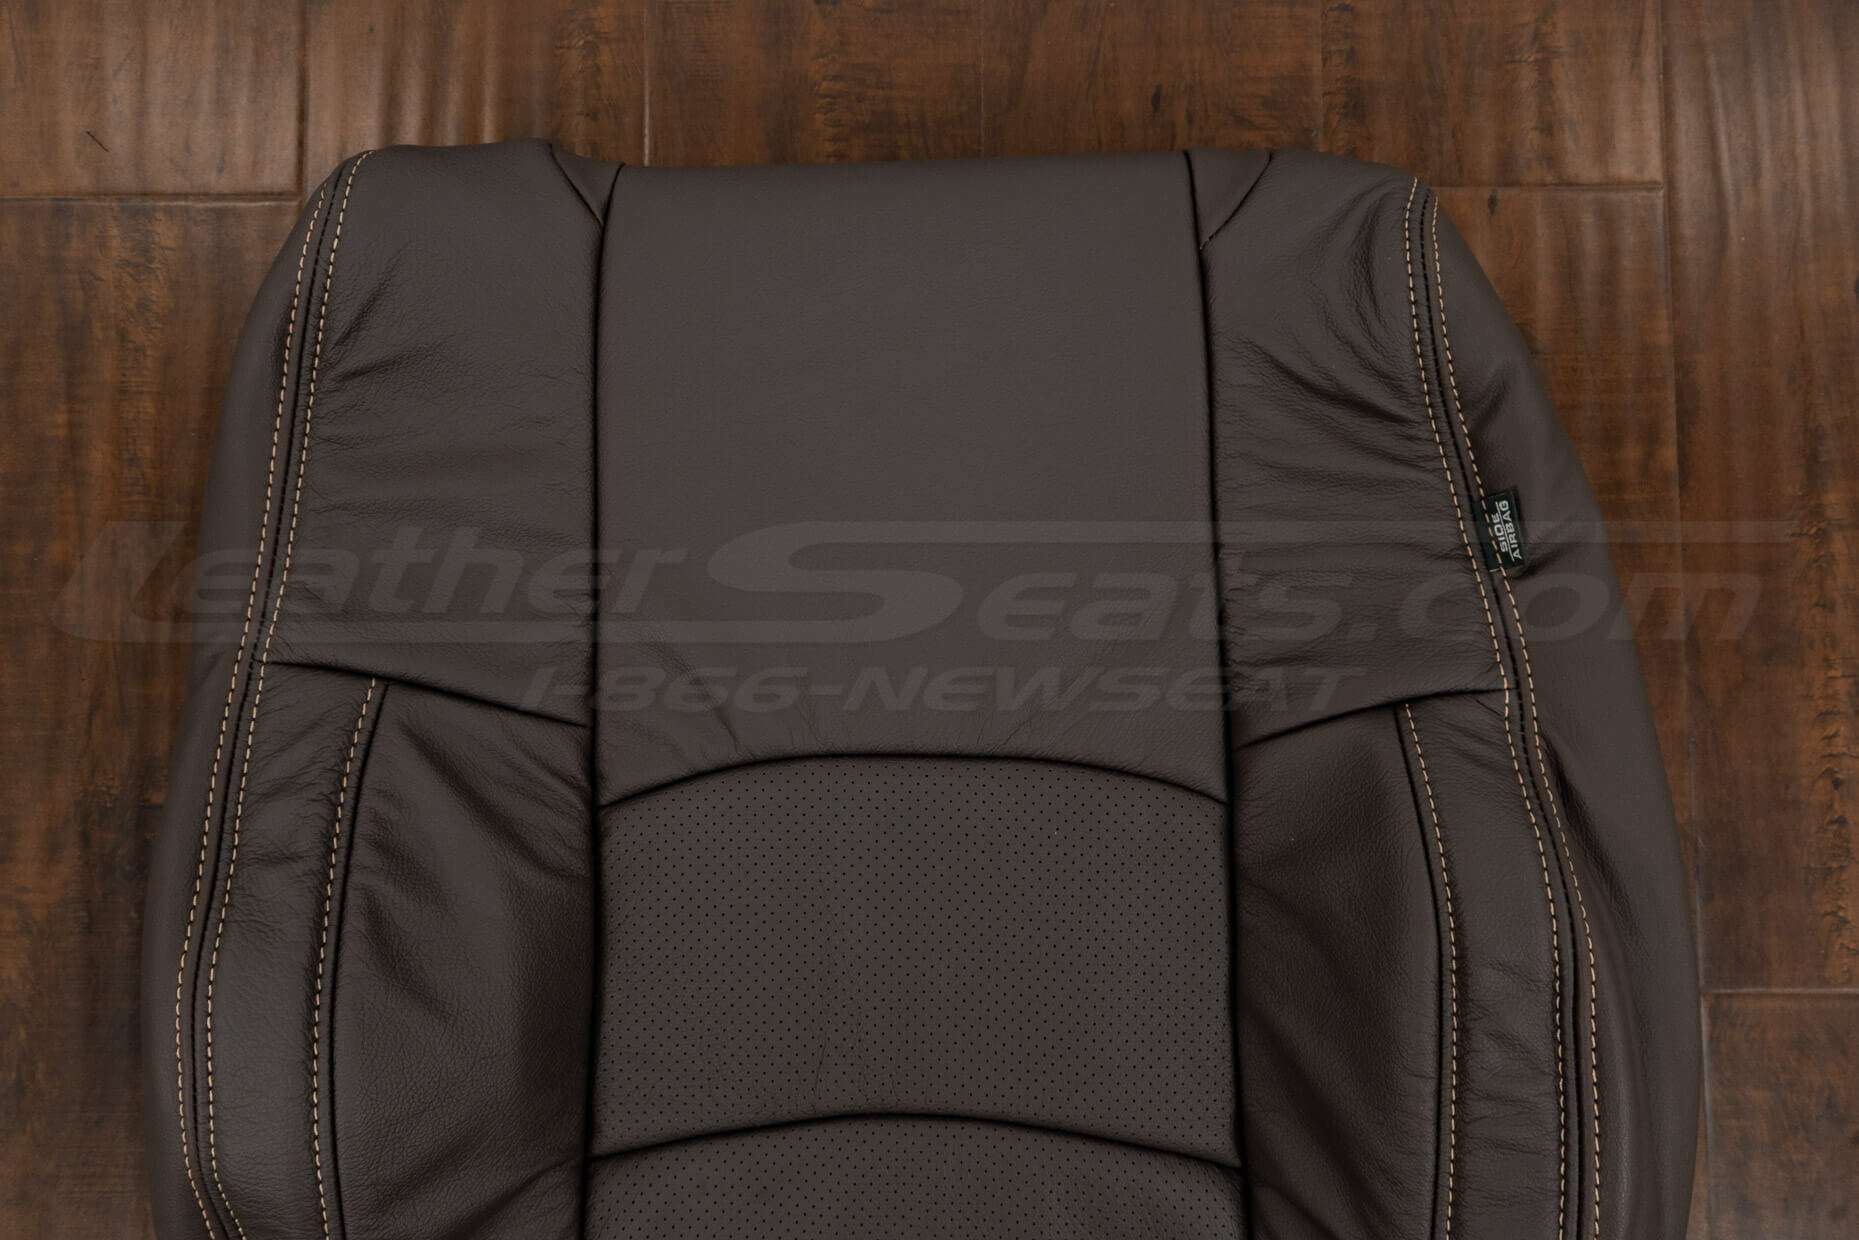 Upper section of backrest upholstery